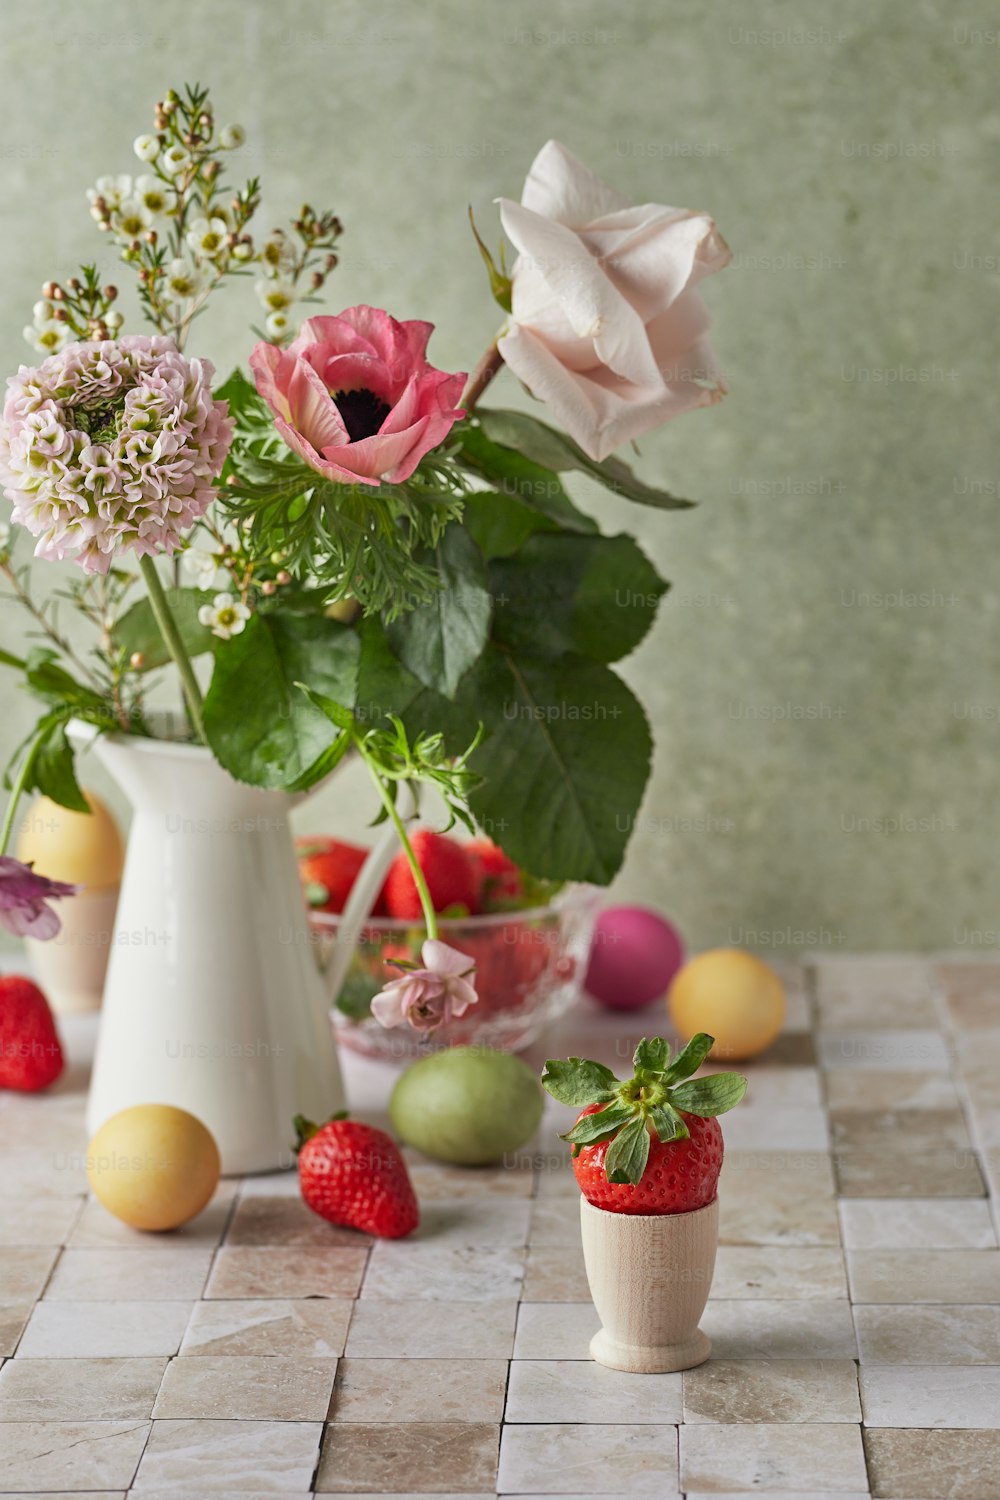 Un jarrón blanco lleno de flores y frutas